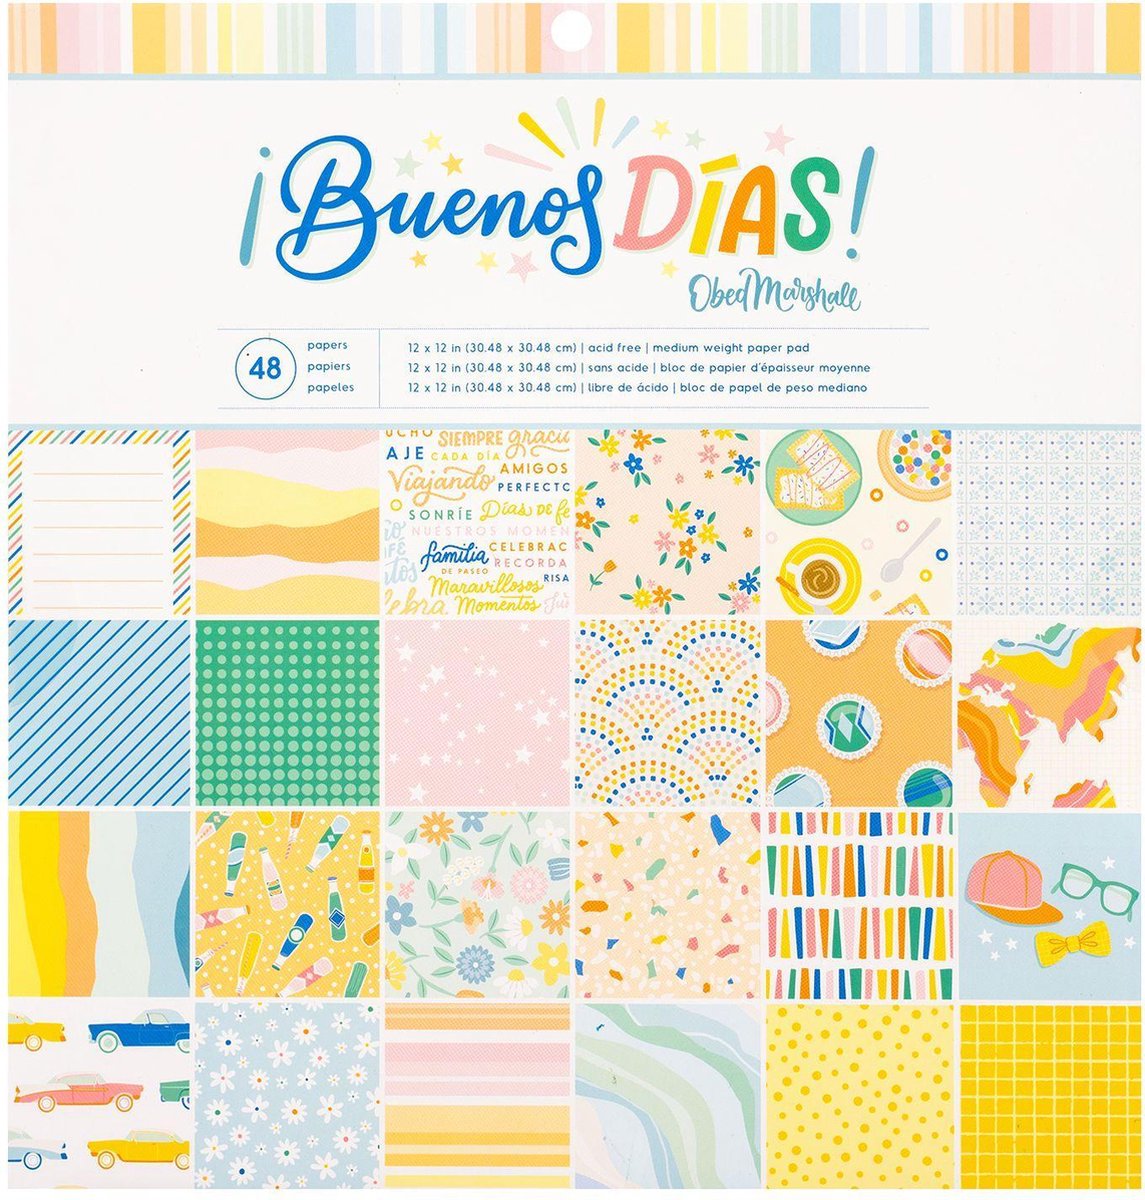 American Crafts - Paper pad - Buenos días - 30.5 x 30.5cm - 40 sheets